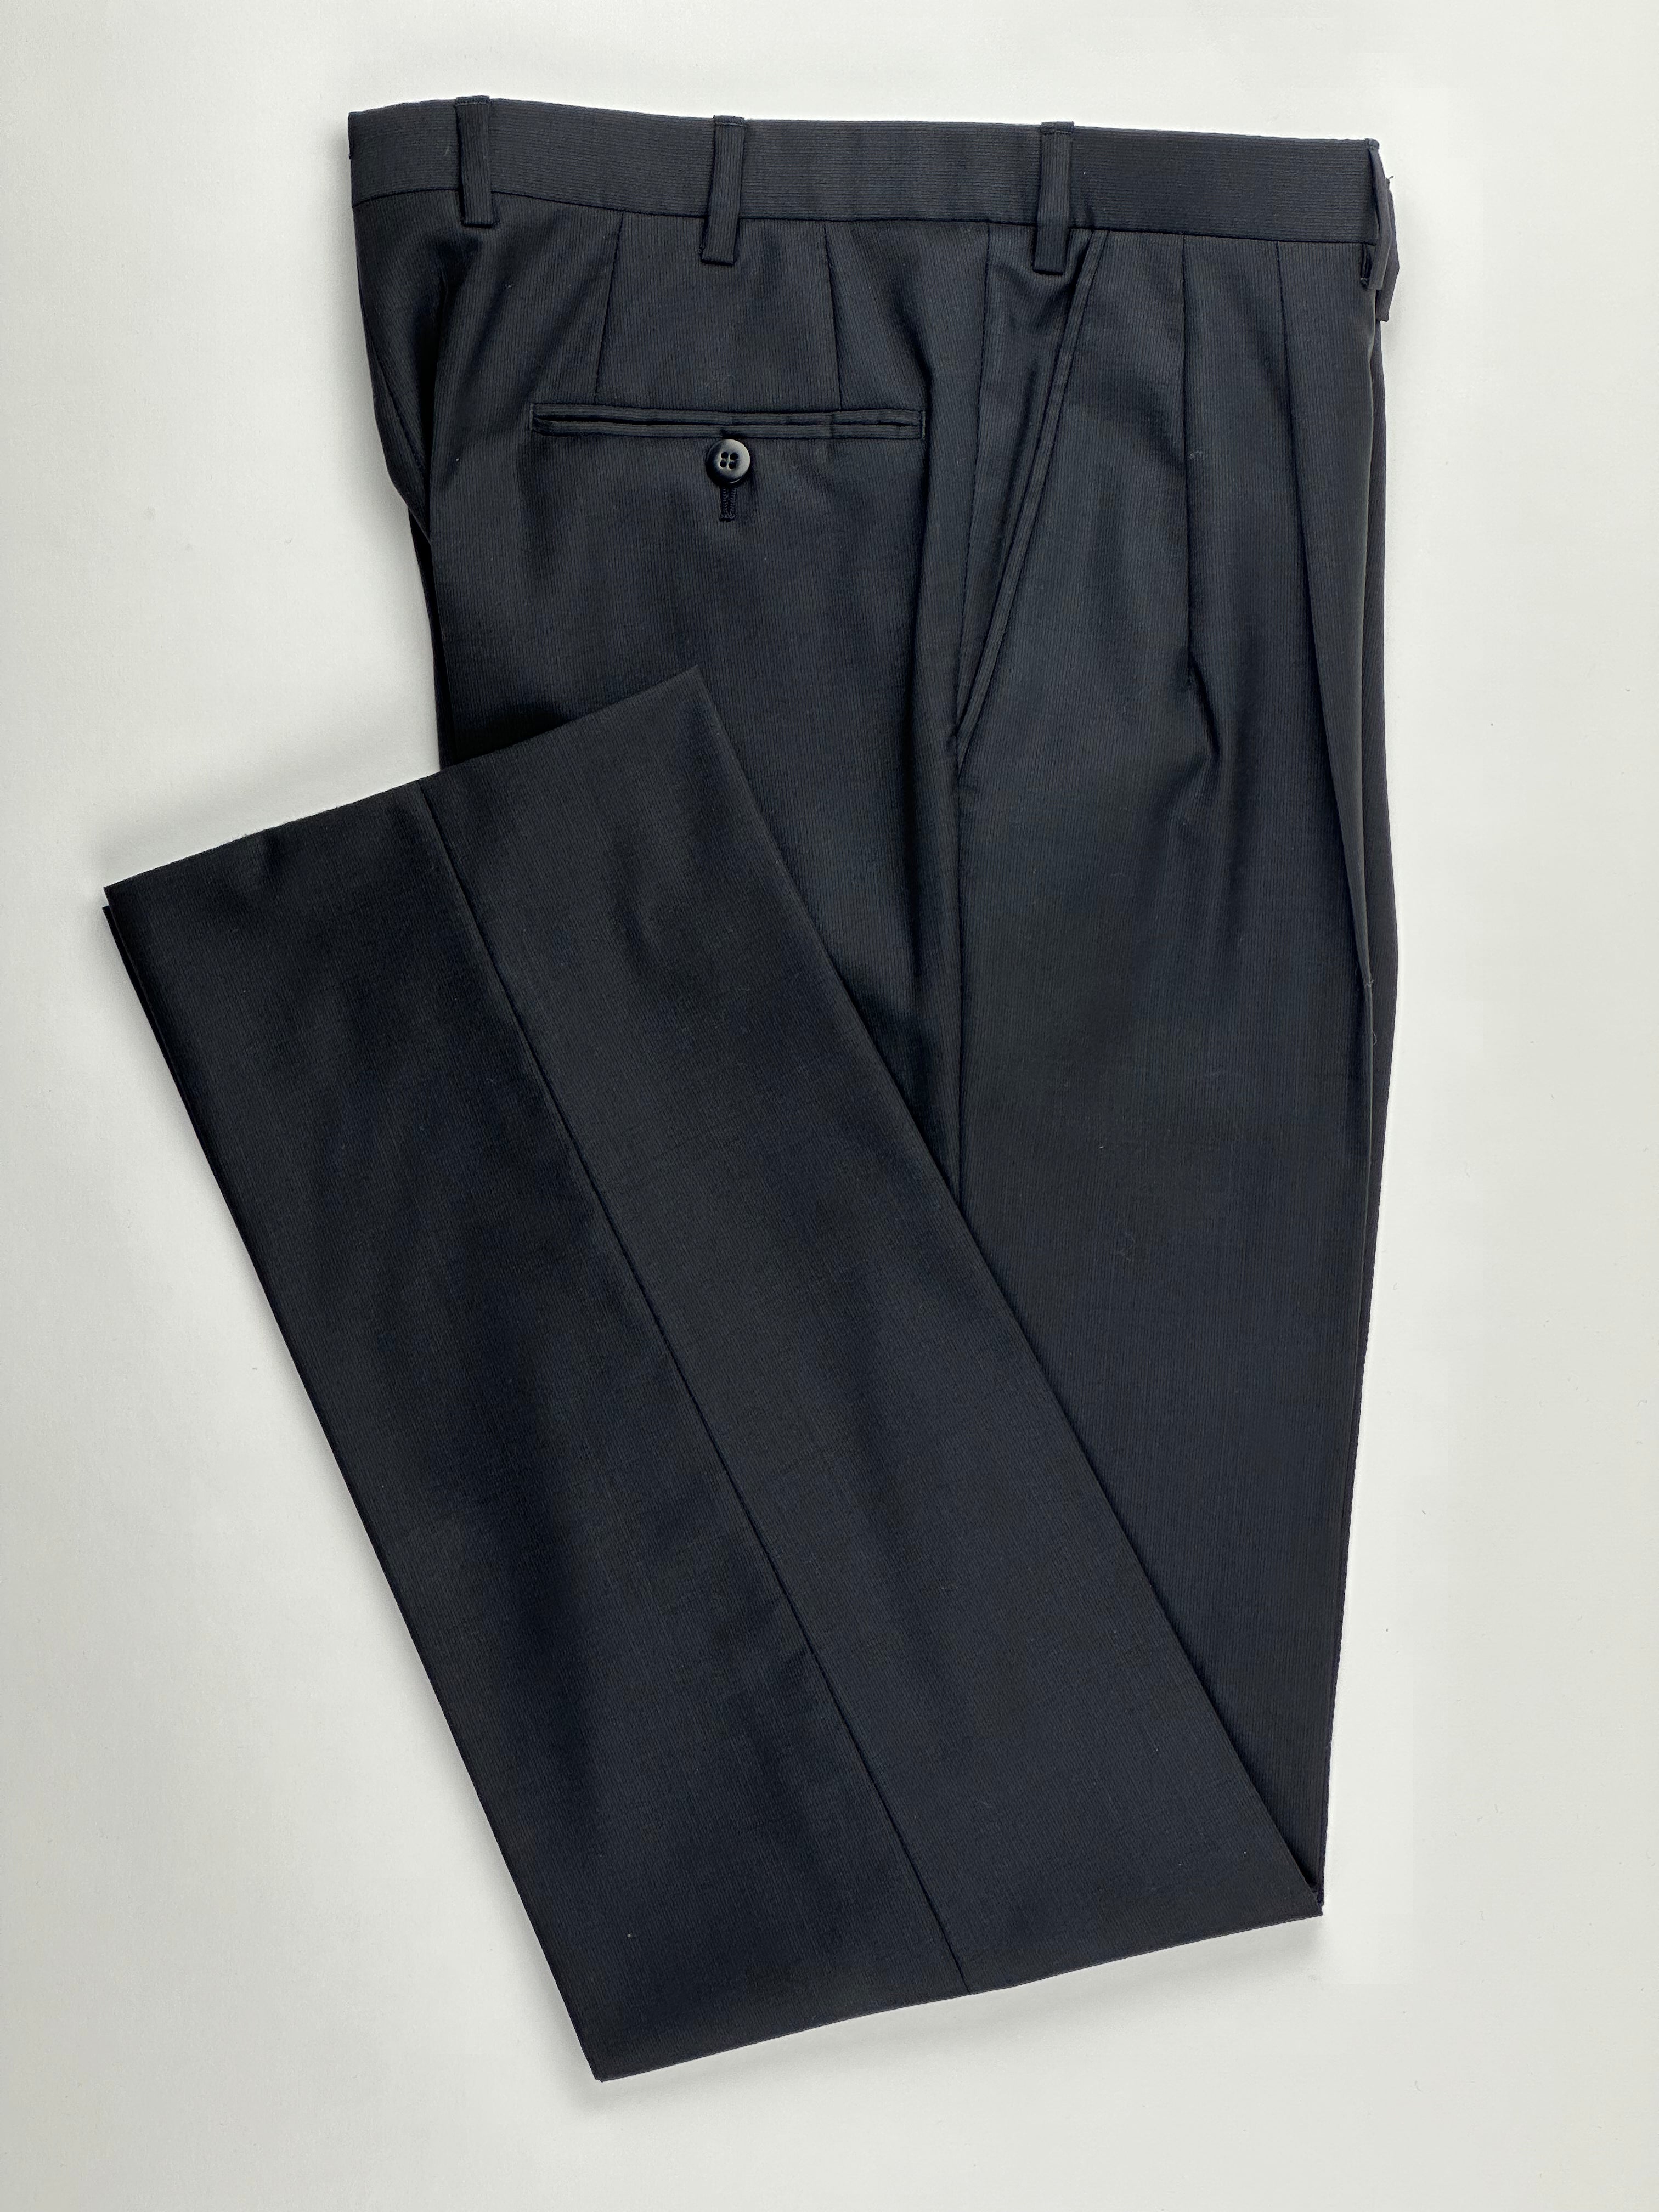 Brioni Black Barrathea Suit